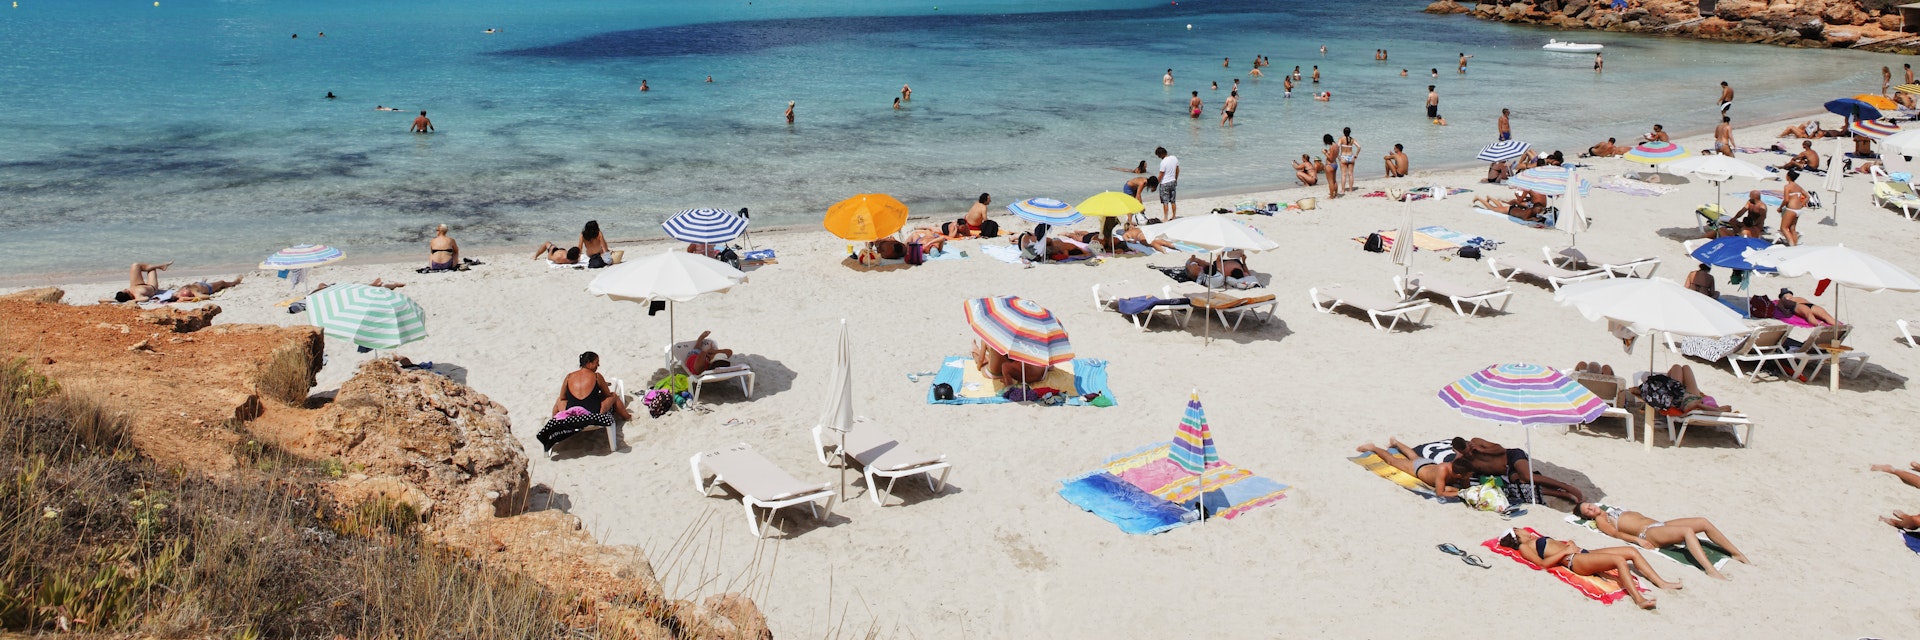 Beach in Cala Saona, Formentera, Balearic Islands, Spain.